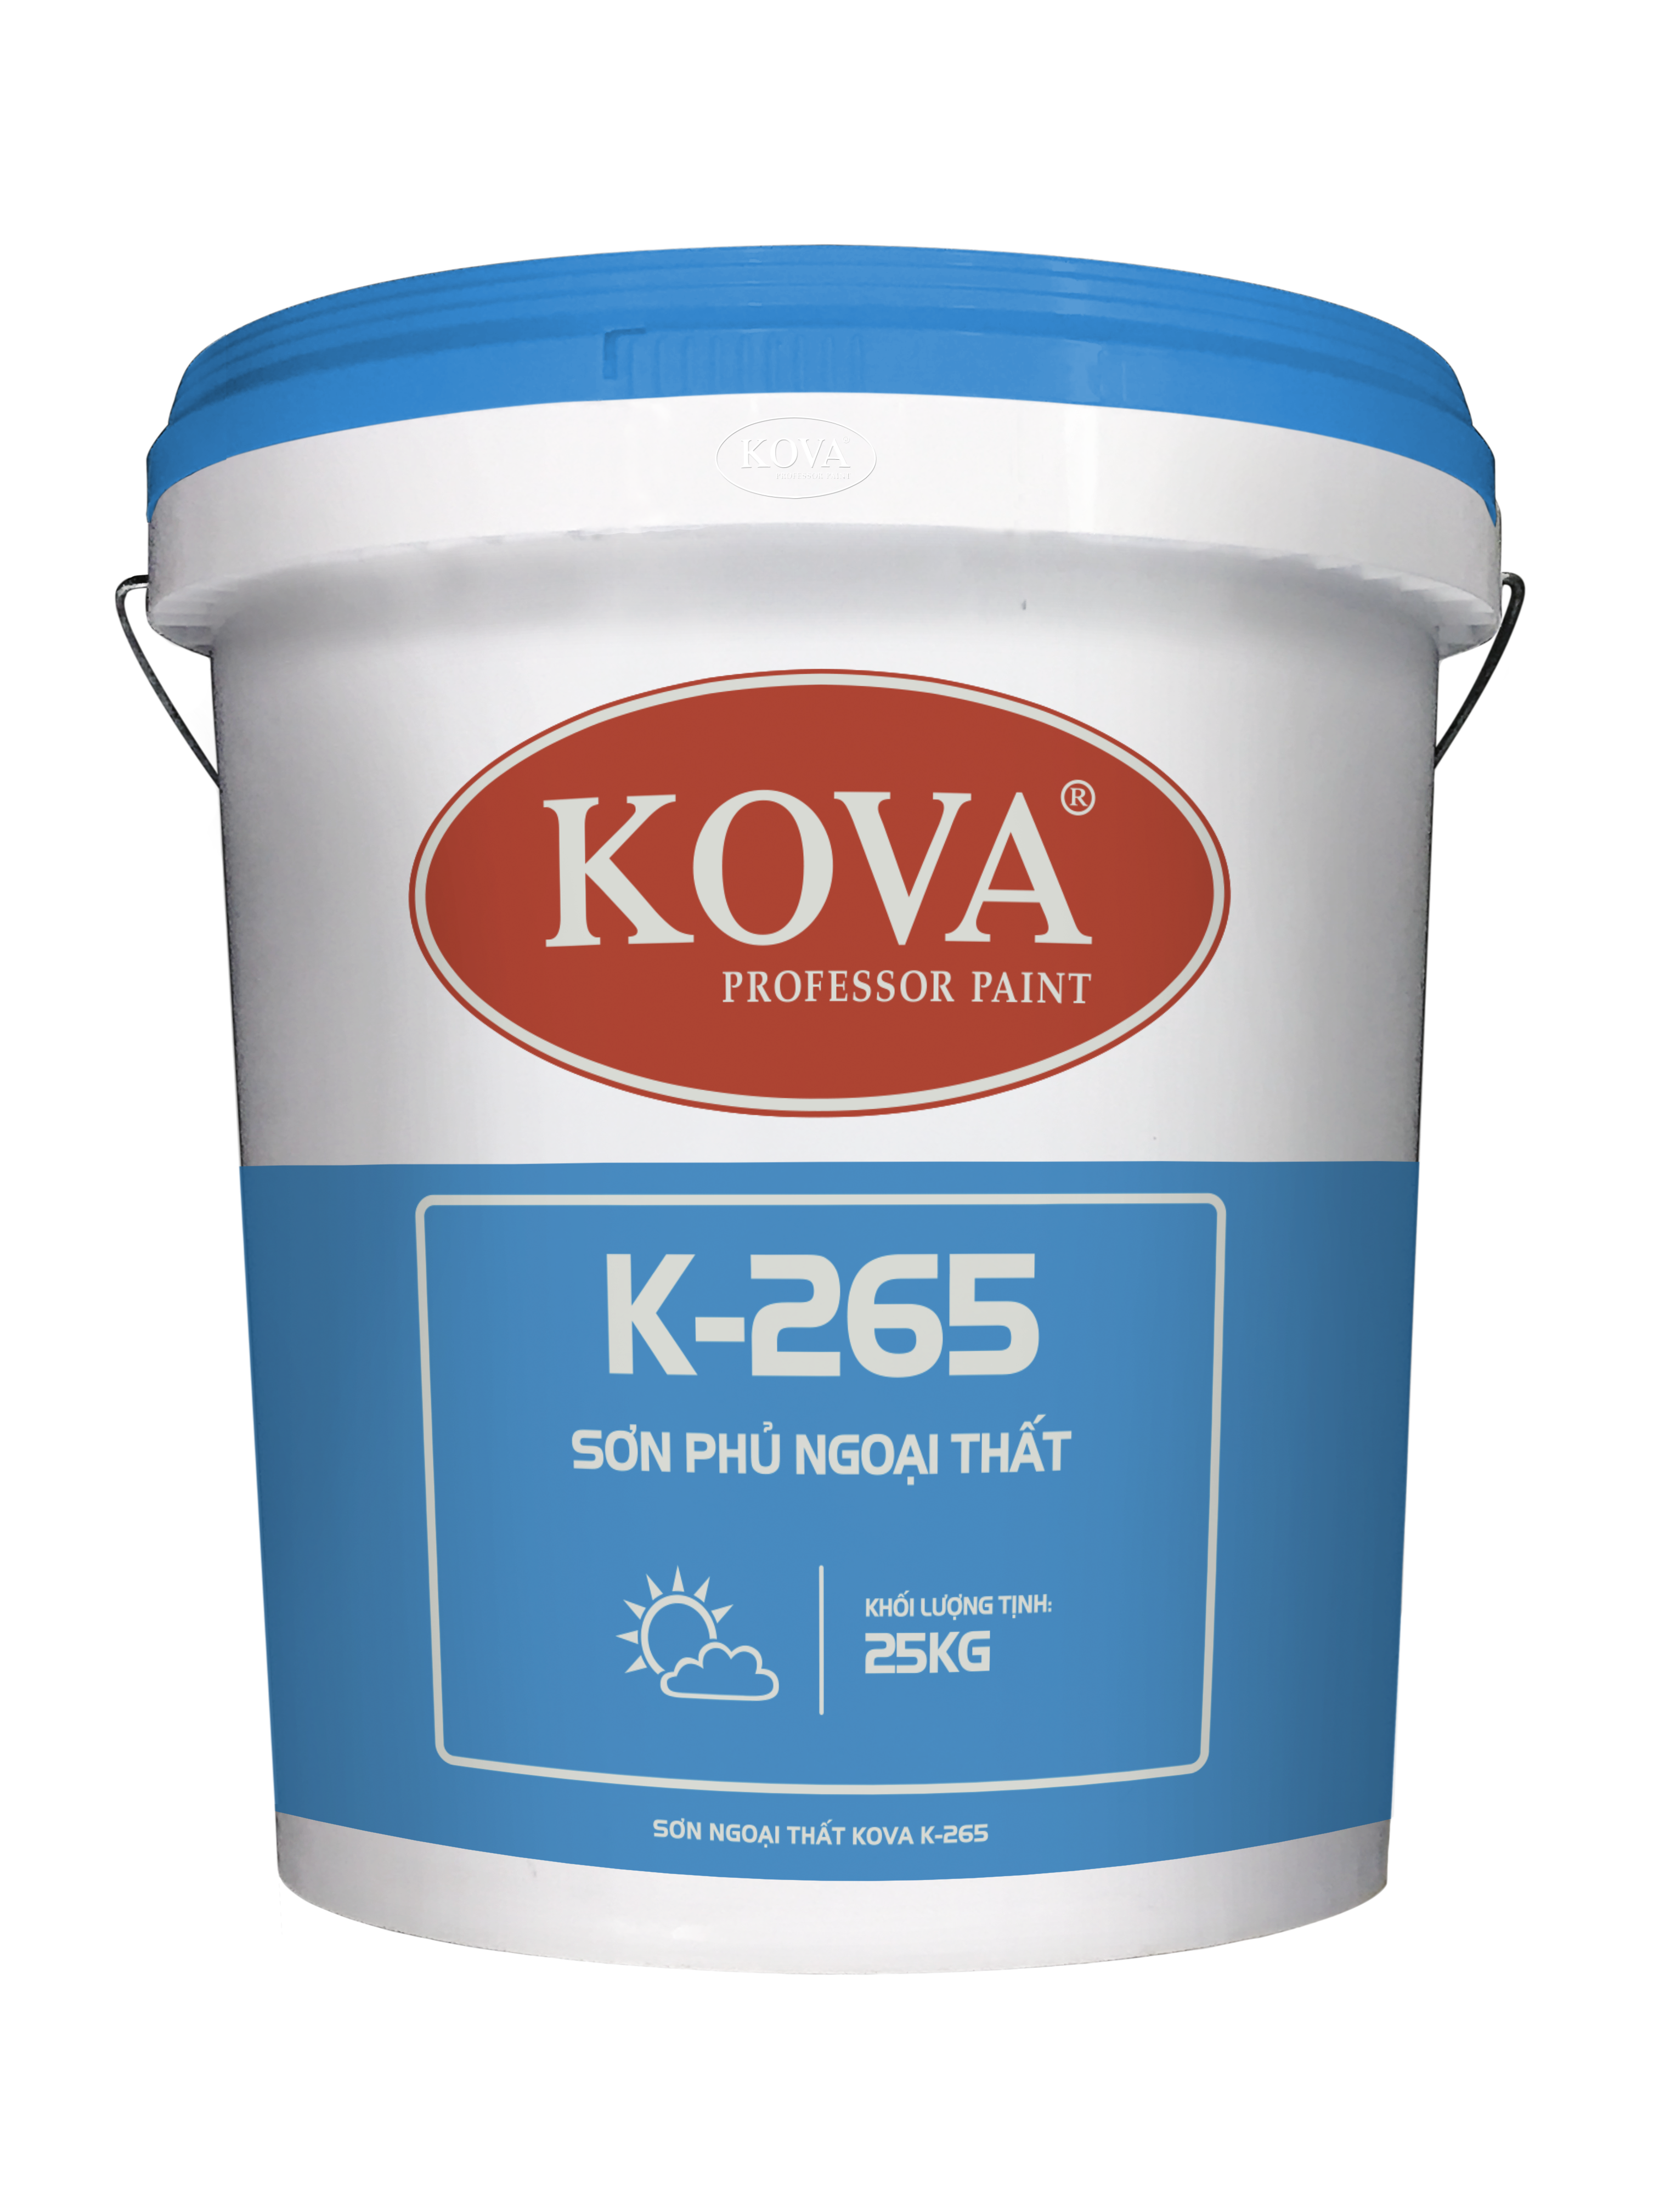 Sơn ngoại thất KOVA K-265 sẽ giữ cho ngôi nhà của bạn luôn mới và bền vững trong thời gian dài. Đây là sản phẩm hoàn hảo cho việc bảo vệ ngôi nhà khỏi các tác động của thời tiết và thời gian.